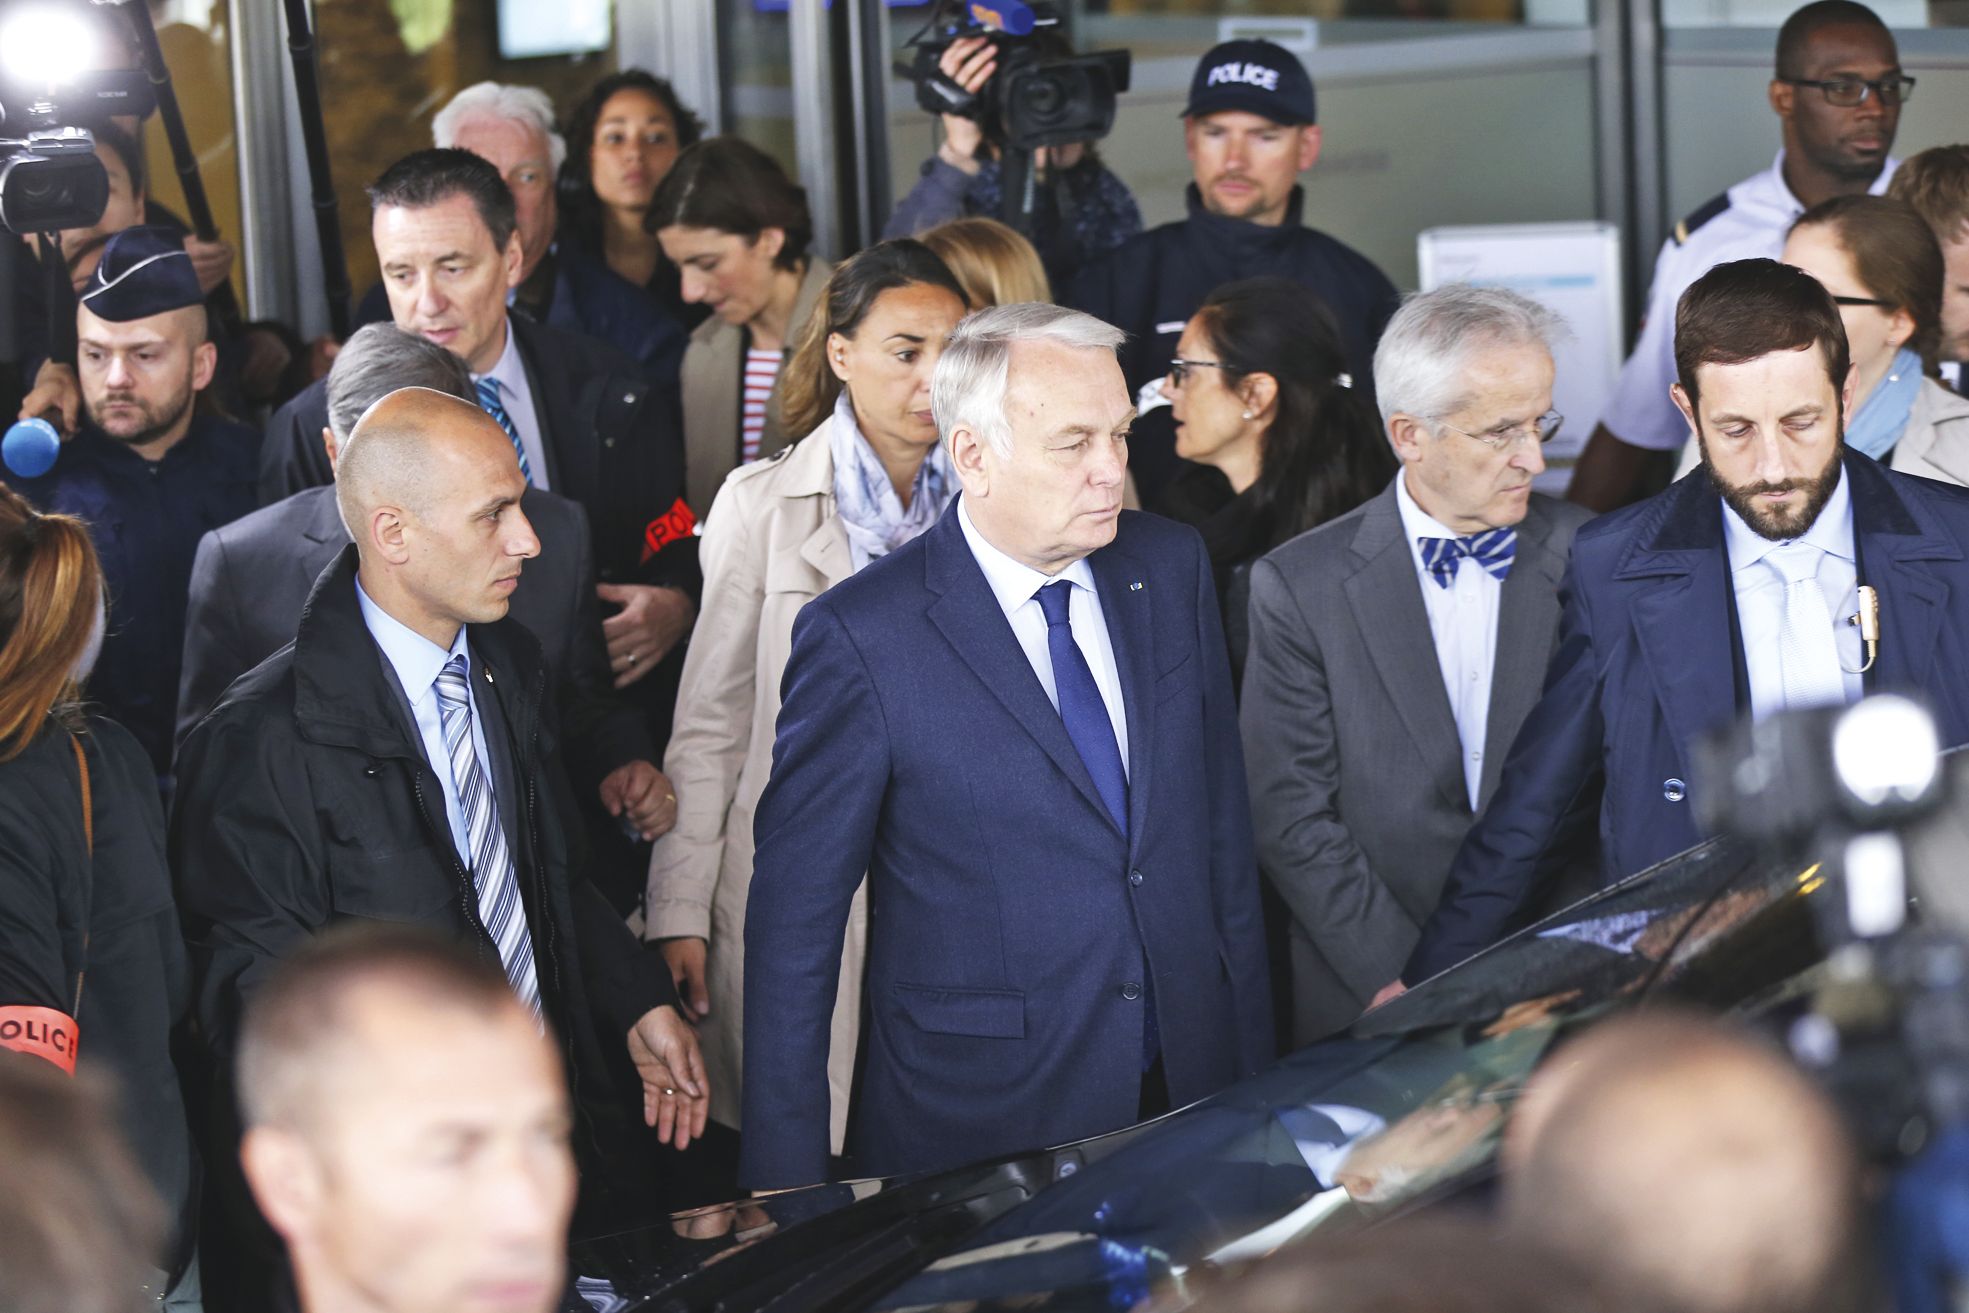 Roissy le 19 mai. Le ministre des Affaires étrangères, Jean-Marc Ayrault, arrive à l’hôtel où sont réunies les familles des passagers.